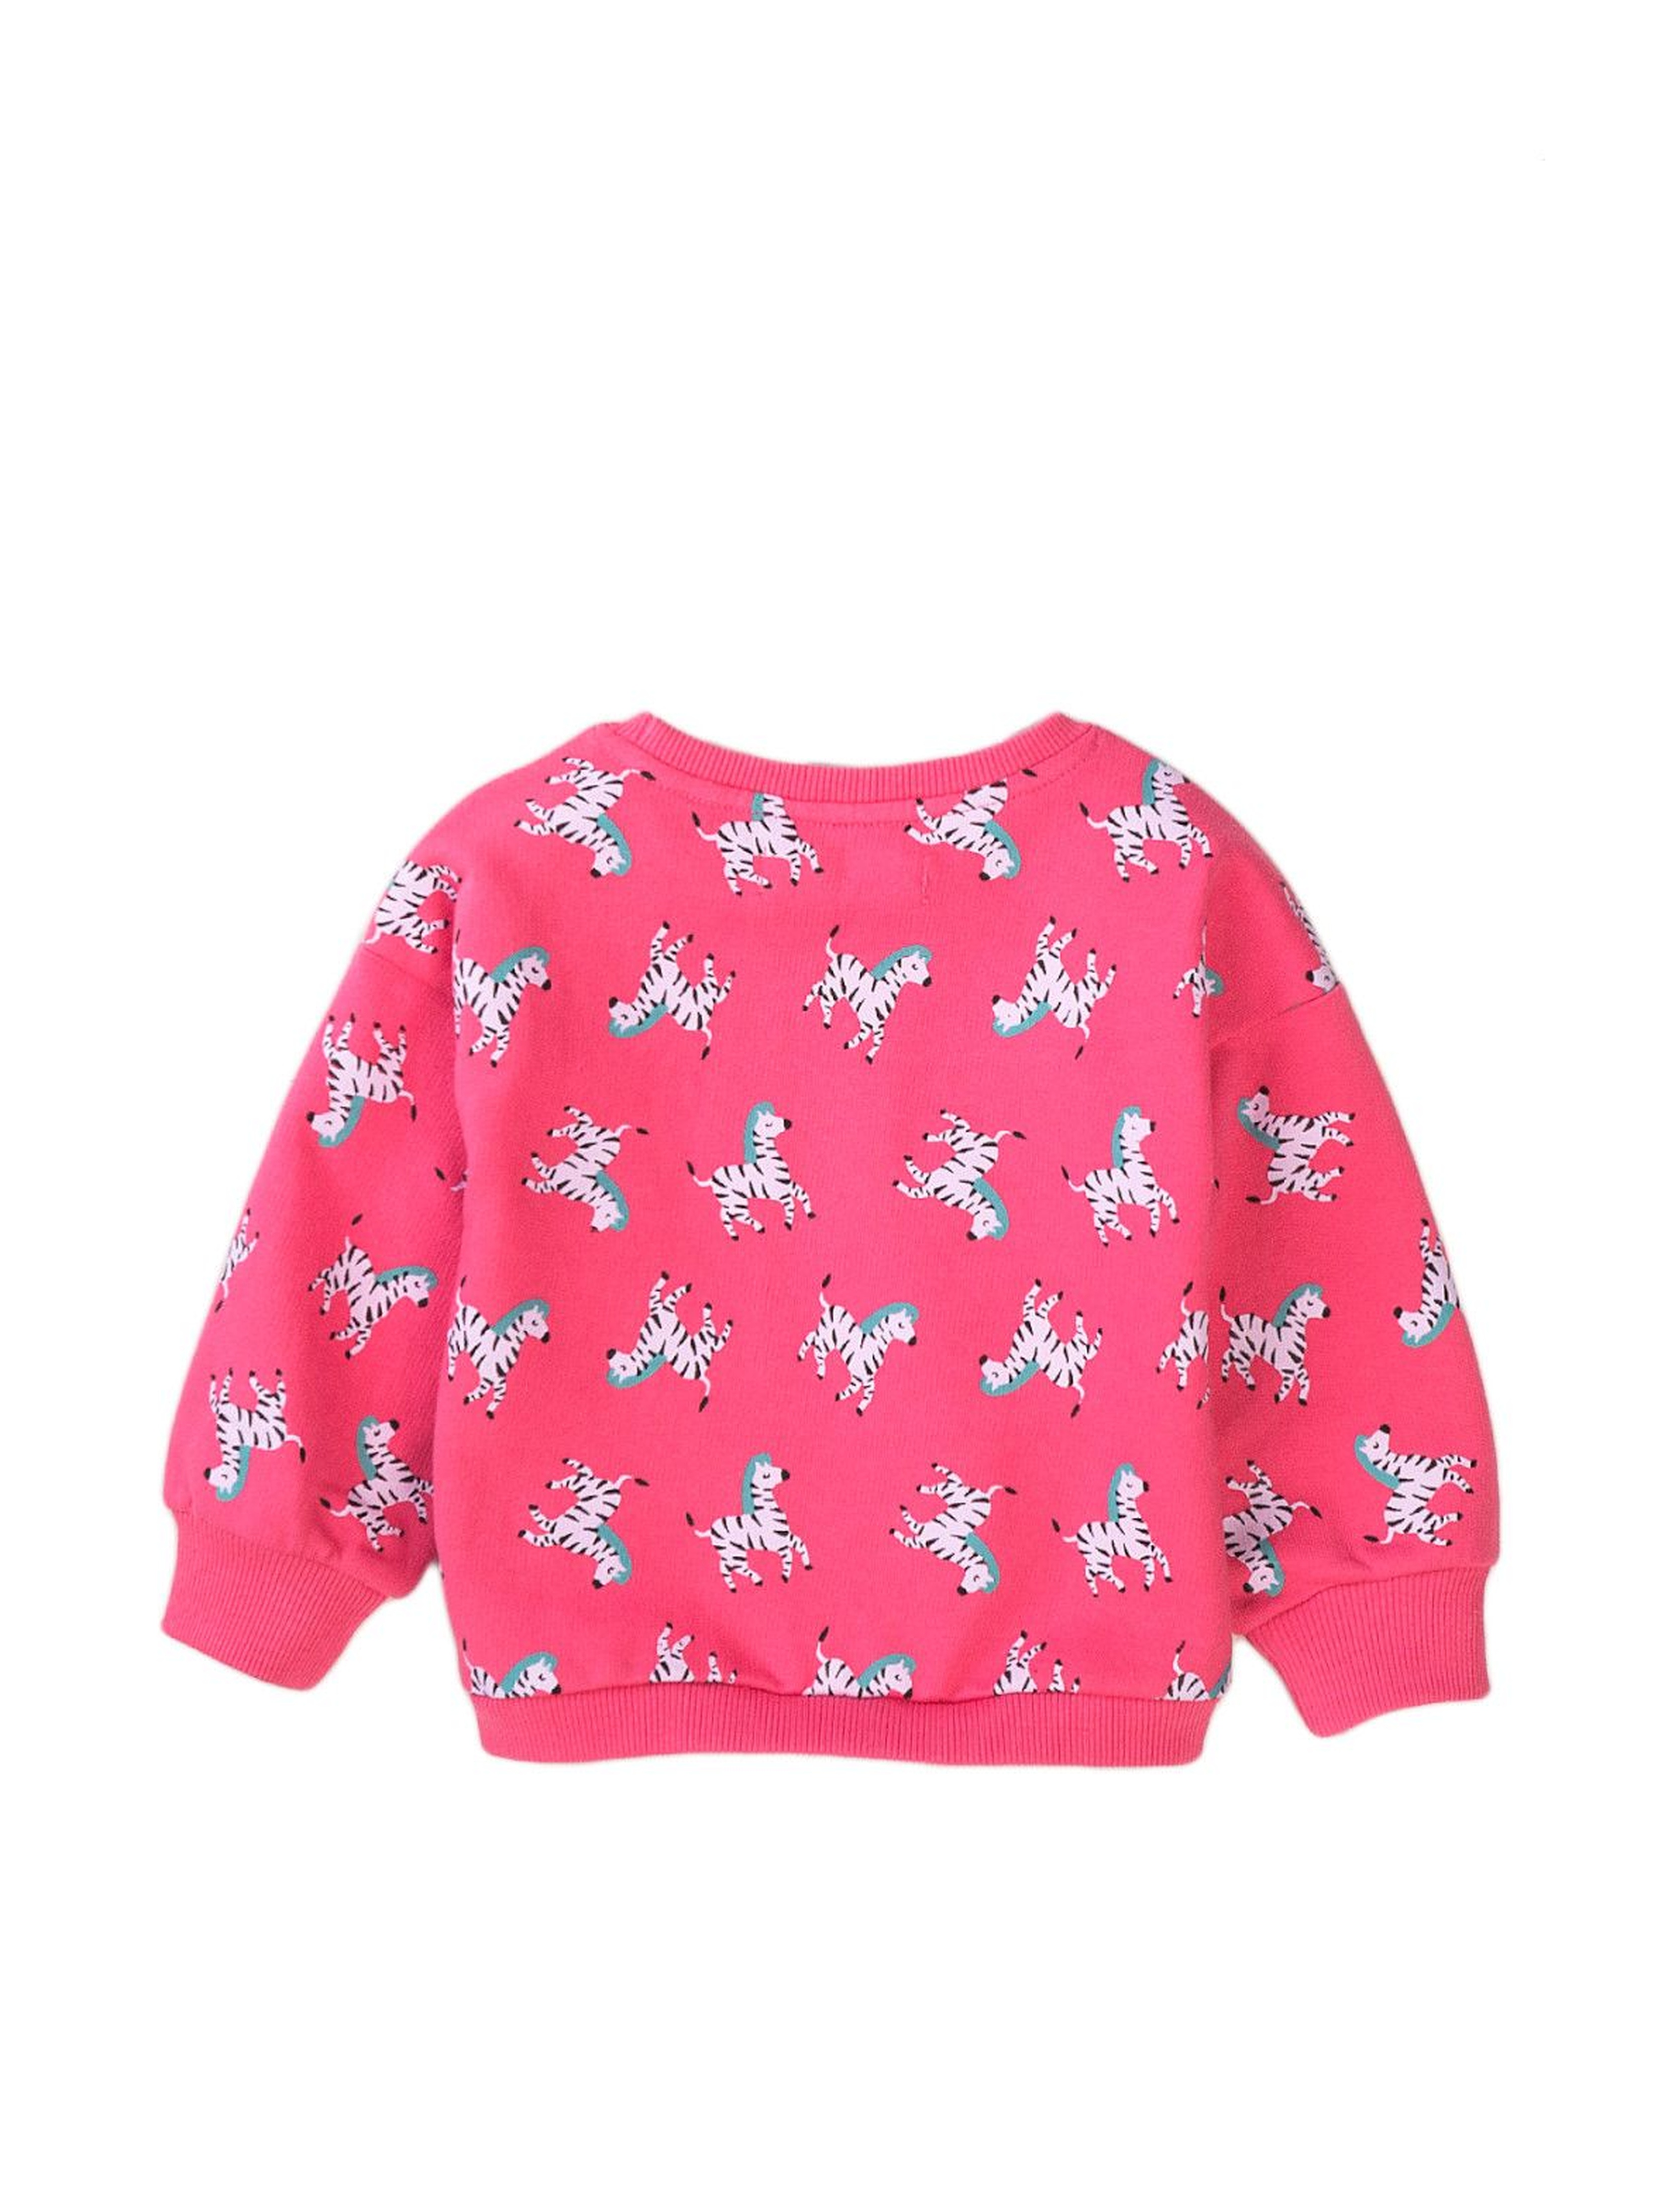 Bluza dziewczęca różowa w zebry